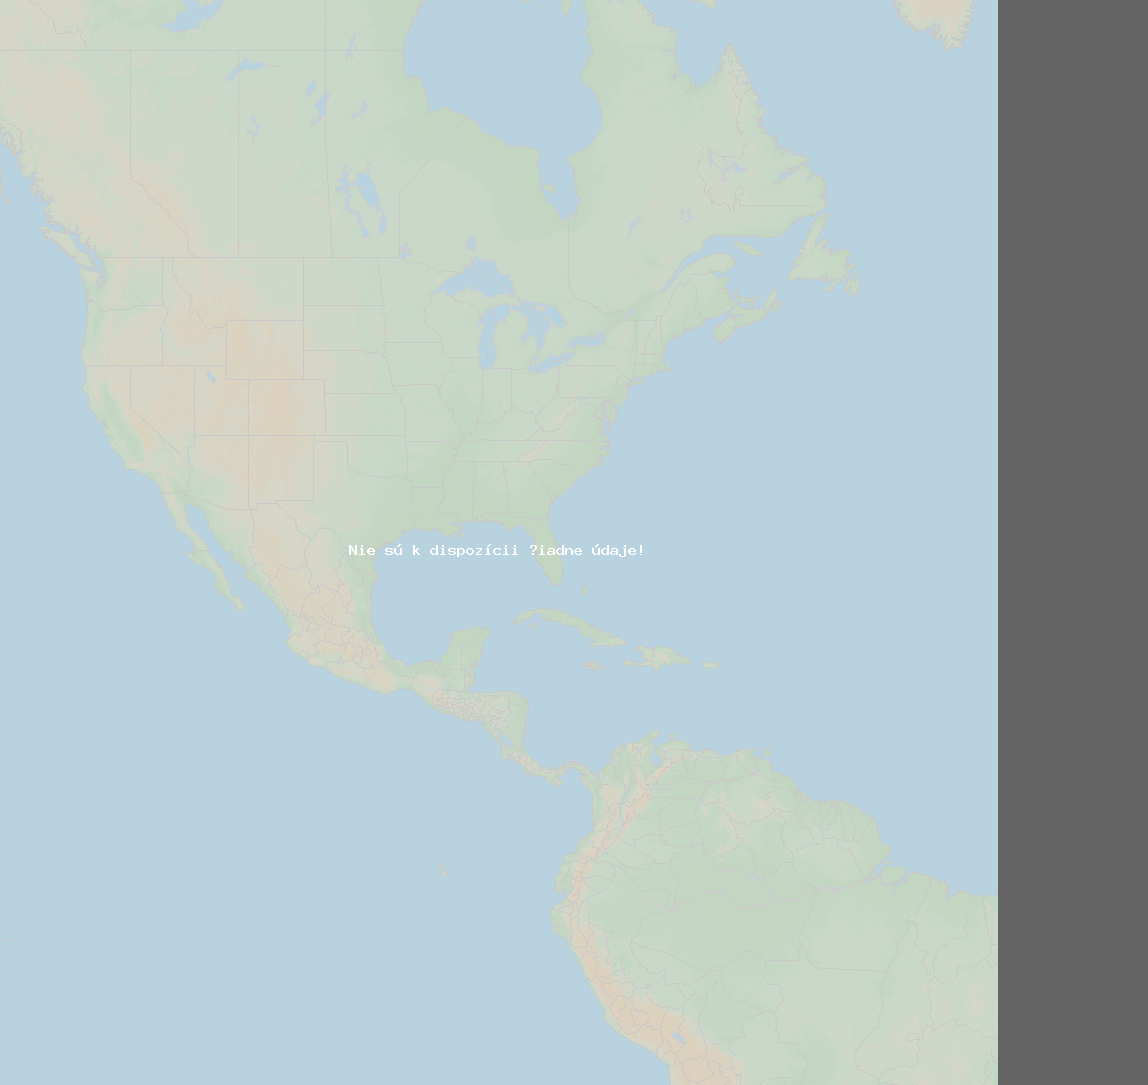 Pomer bleskov (Stanica indianapolis) North America 2024 Január